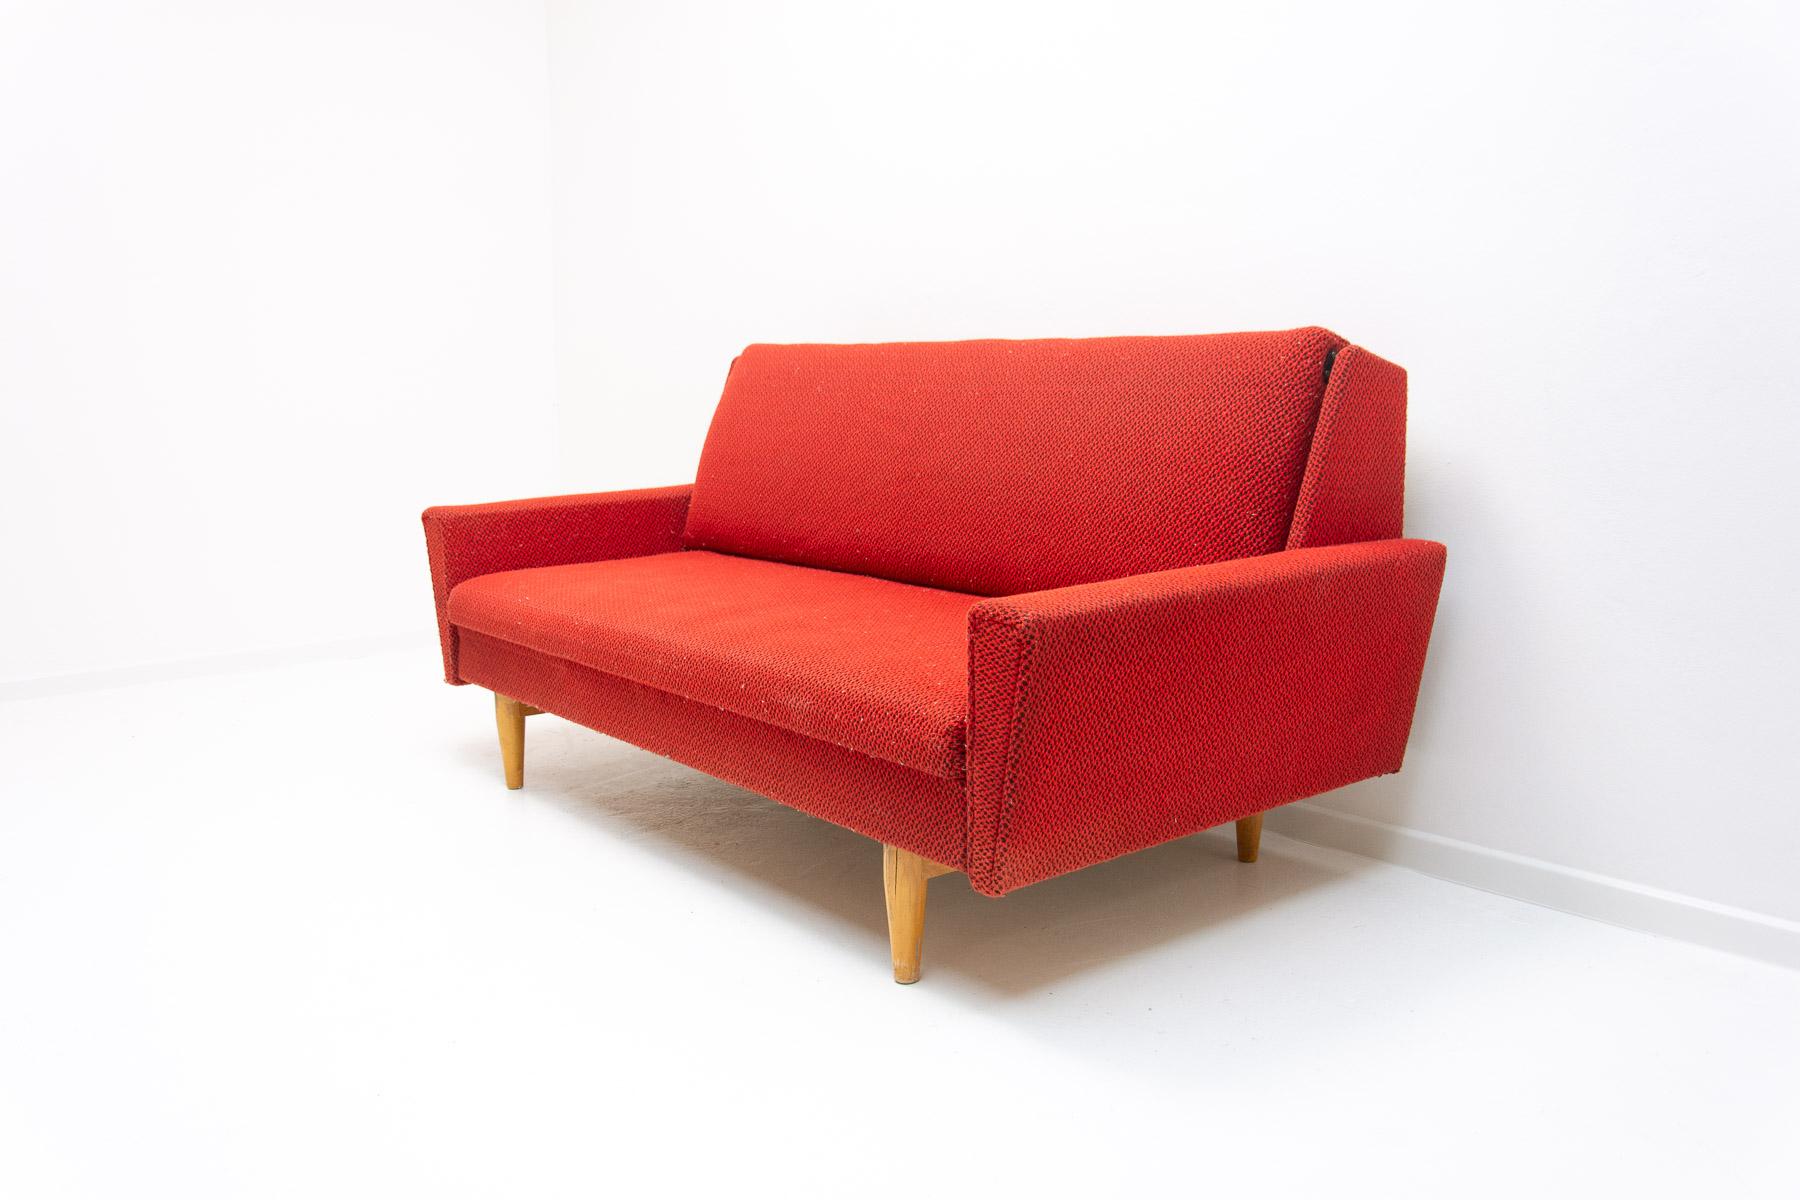 Dieses Sofa aus der Mitte des Jahrhunderts wurde in der ehemaligen Tschechoslowakei in den 1960er Jahren hergestellt.

MATERIAL: Holz, Stoff.

Das Sofa ist in gutem Vintage-Zustand mit leichten Alters- und Gebrauchsspuren.

Höhe: 78 cm

Länge: 171